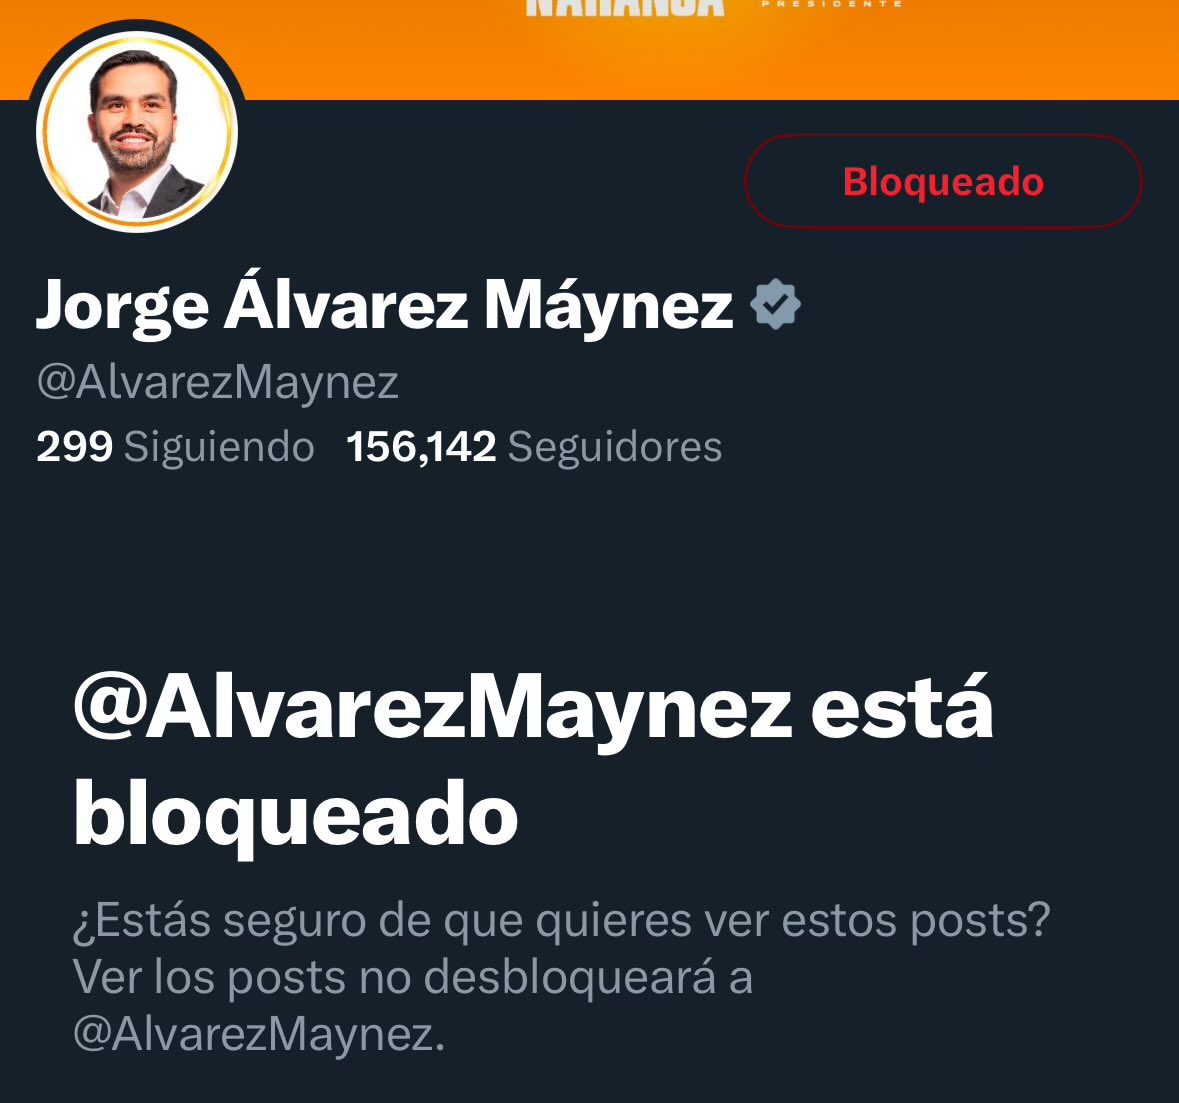 Basta de mierda naranja, hablemos de lo realmente importante: @XochitlGalvez será la primera presidenta de México en tan solo 19 días. Todos a votar masivamente por un #MexicoSinMiedo este 2 de junio.
#LosXingonesVotamosPorXóchitl